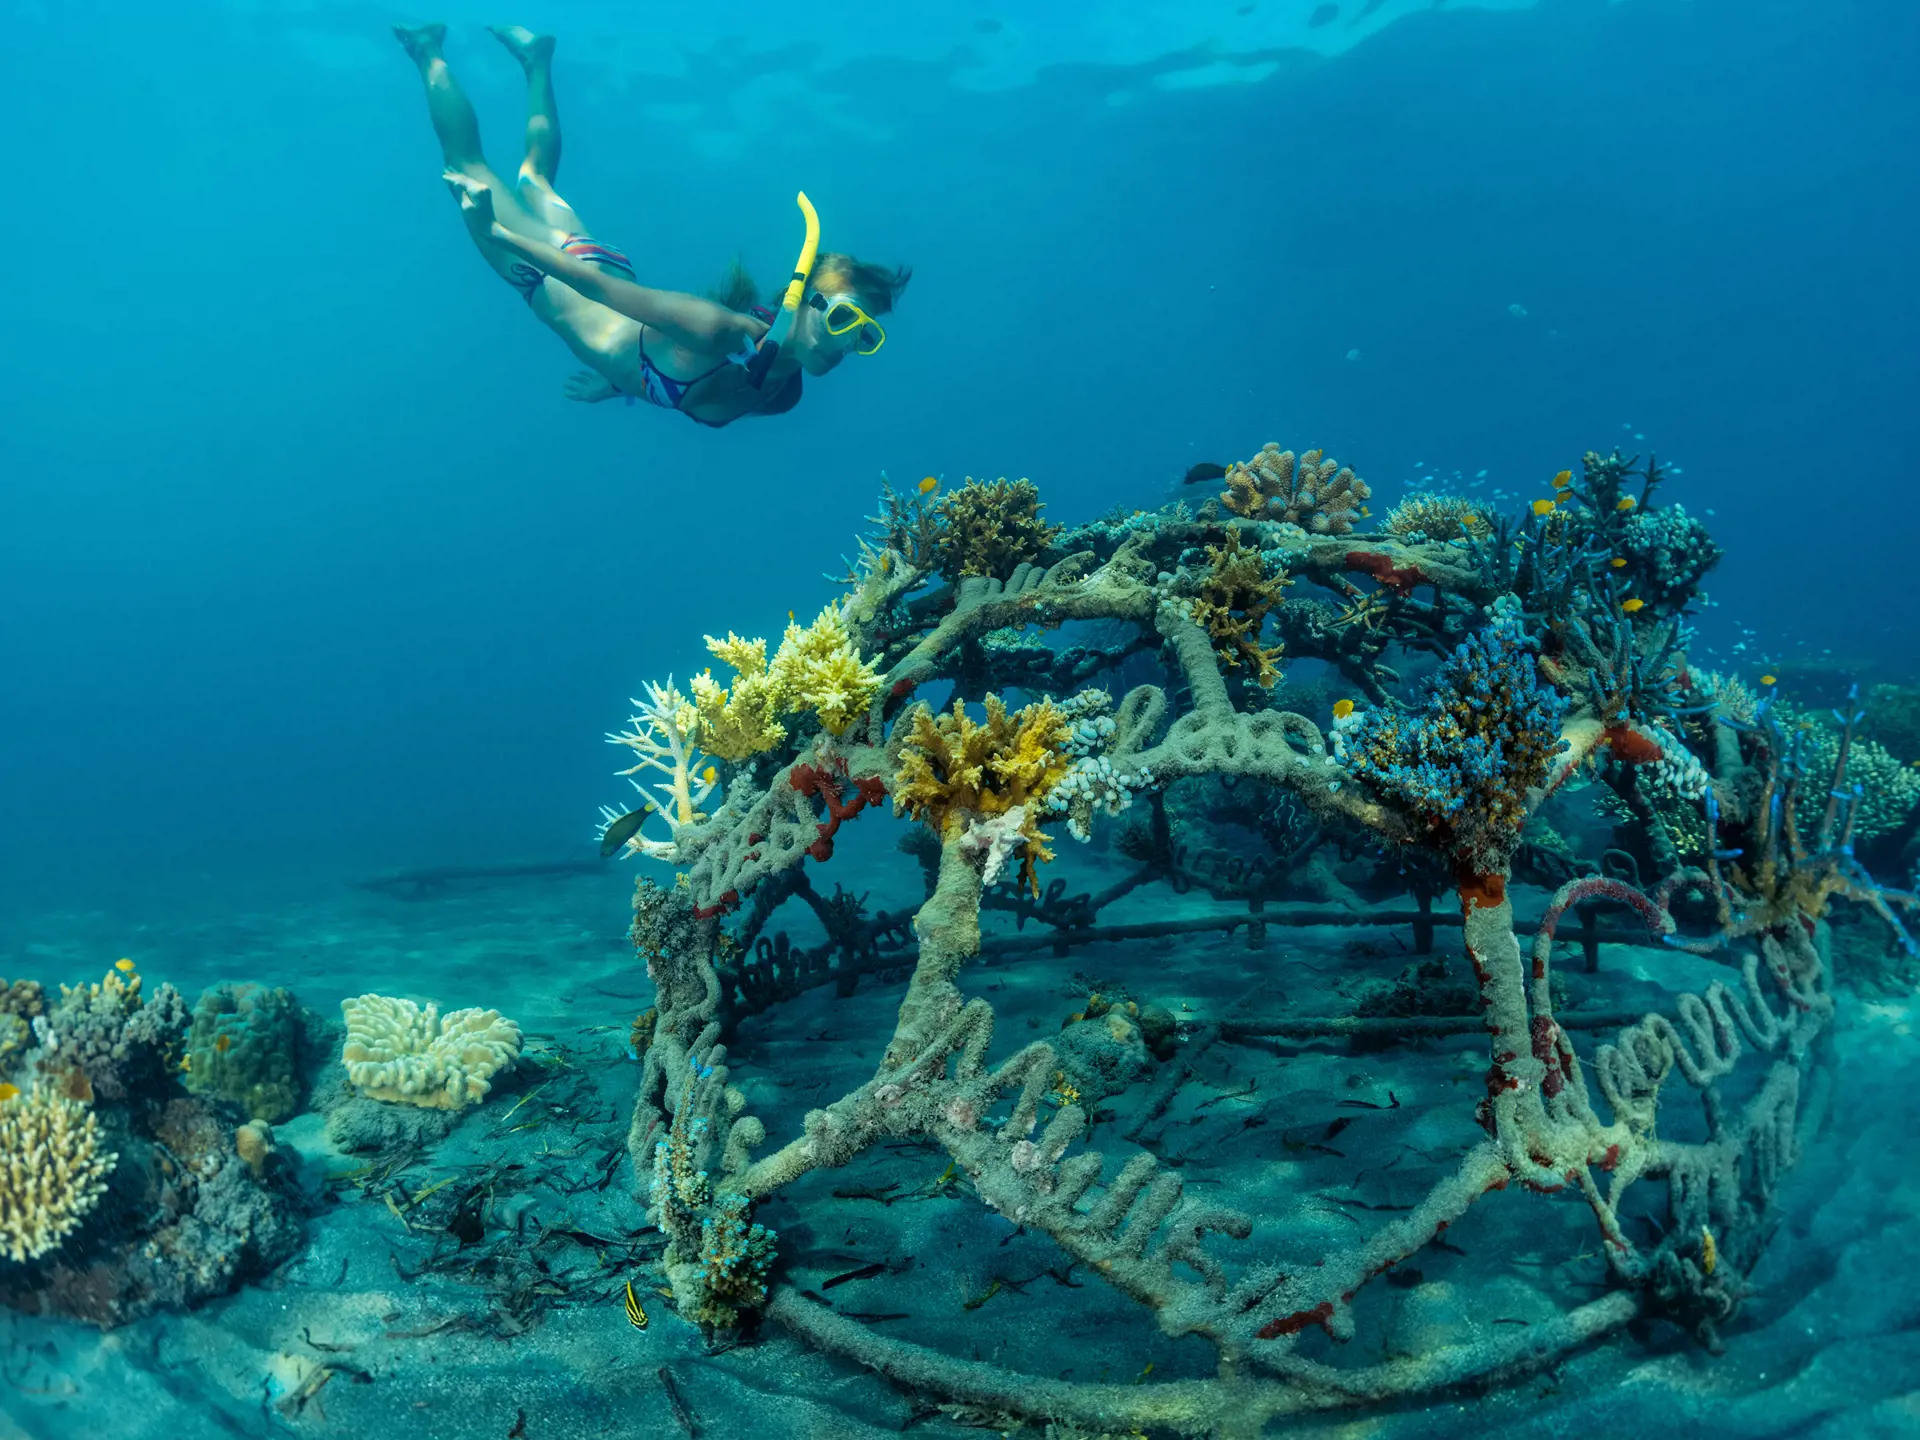 HJÆLP TIL KORALLER - Der bliver gjort meget for at bevare og hjælpe korallerne i området. Her en jernstruktur, som babykoraller kan vokse på.